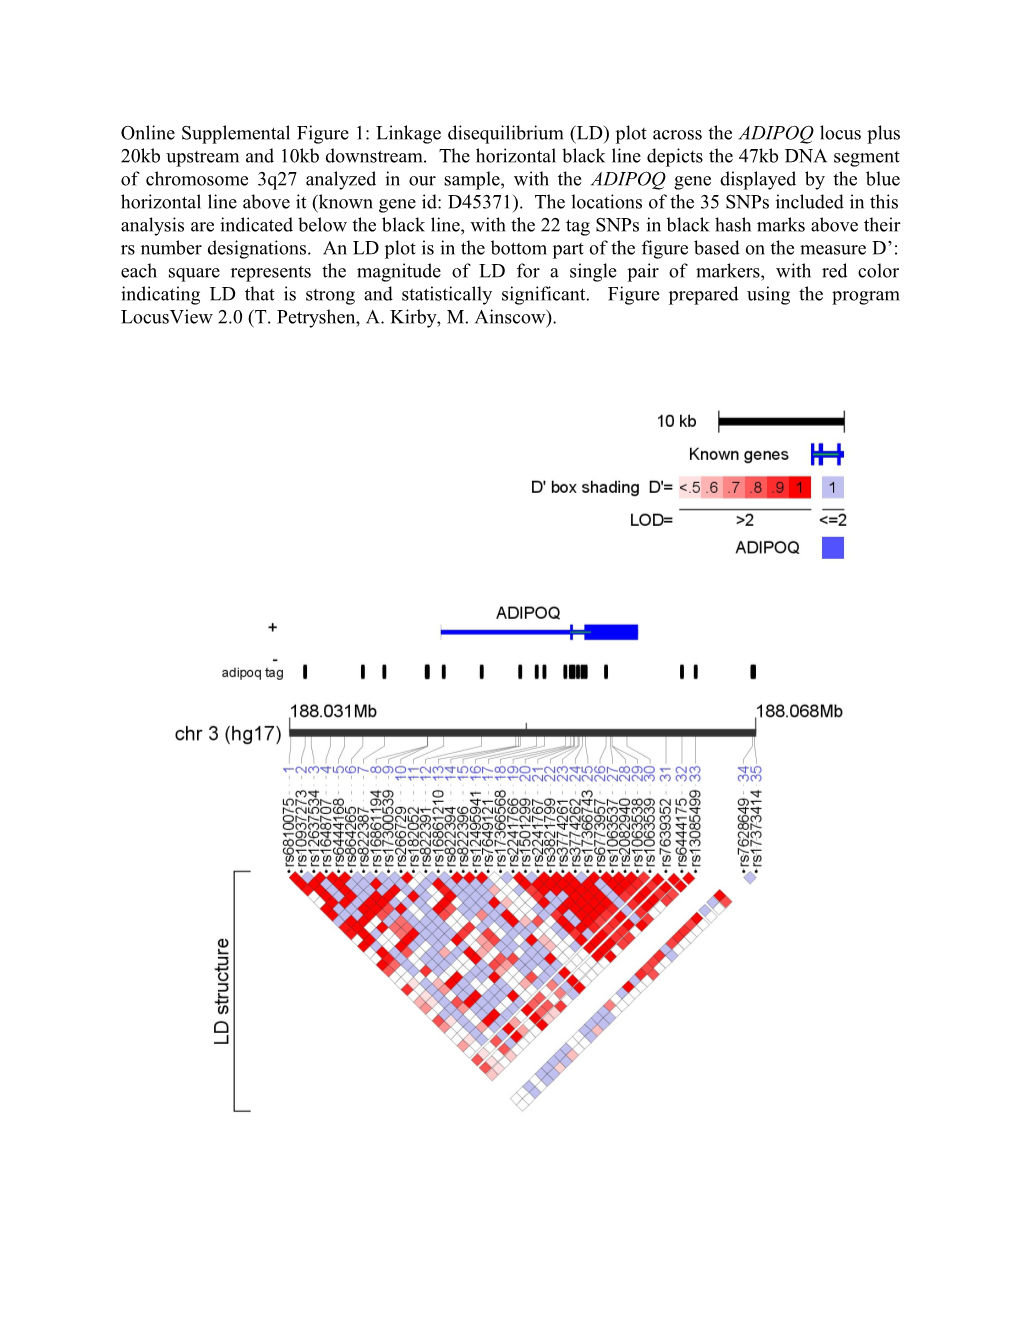 Online Supplemental Figure 1: Linkage Disequilibrium (LD) Plot Across the ADIPOQ Locus